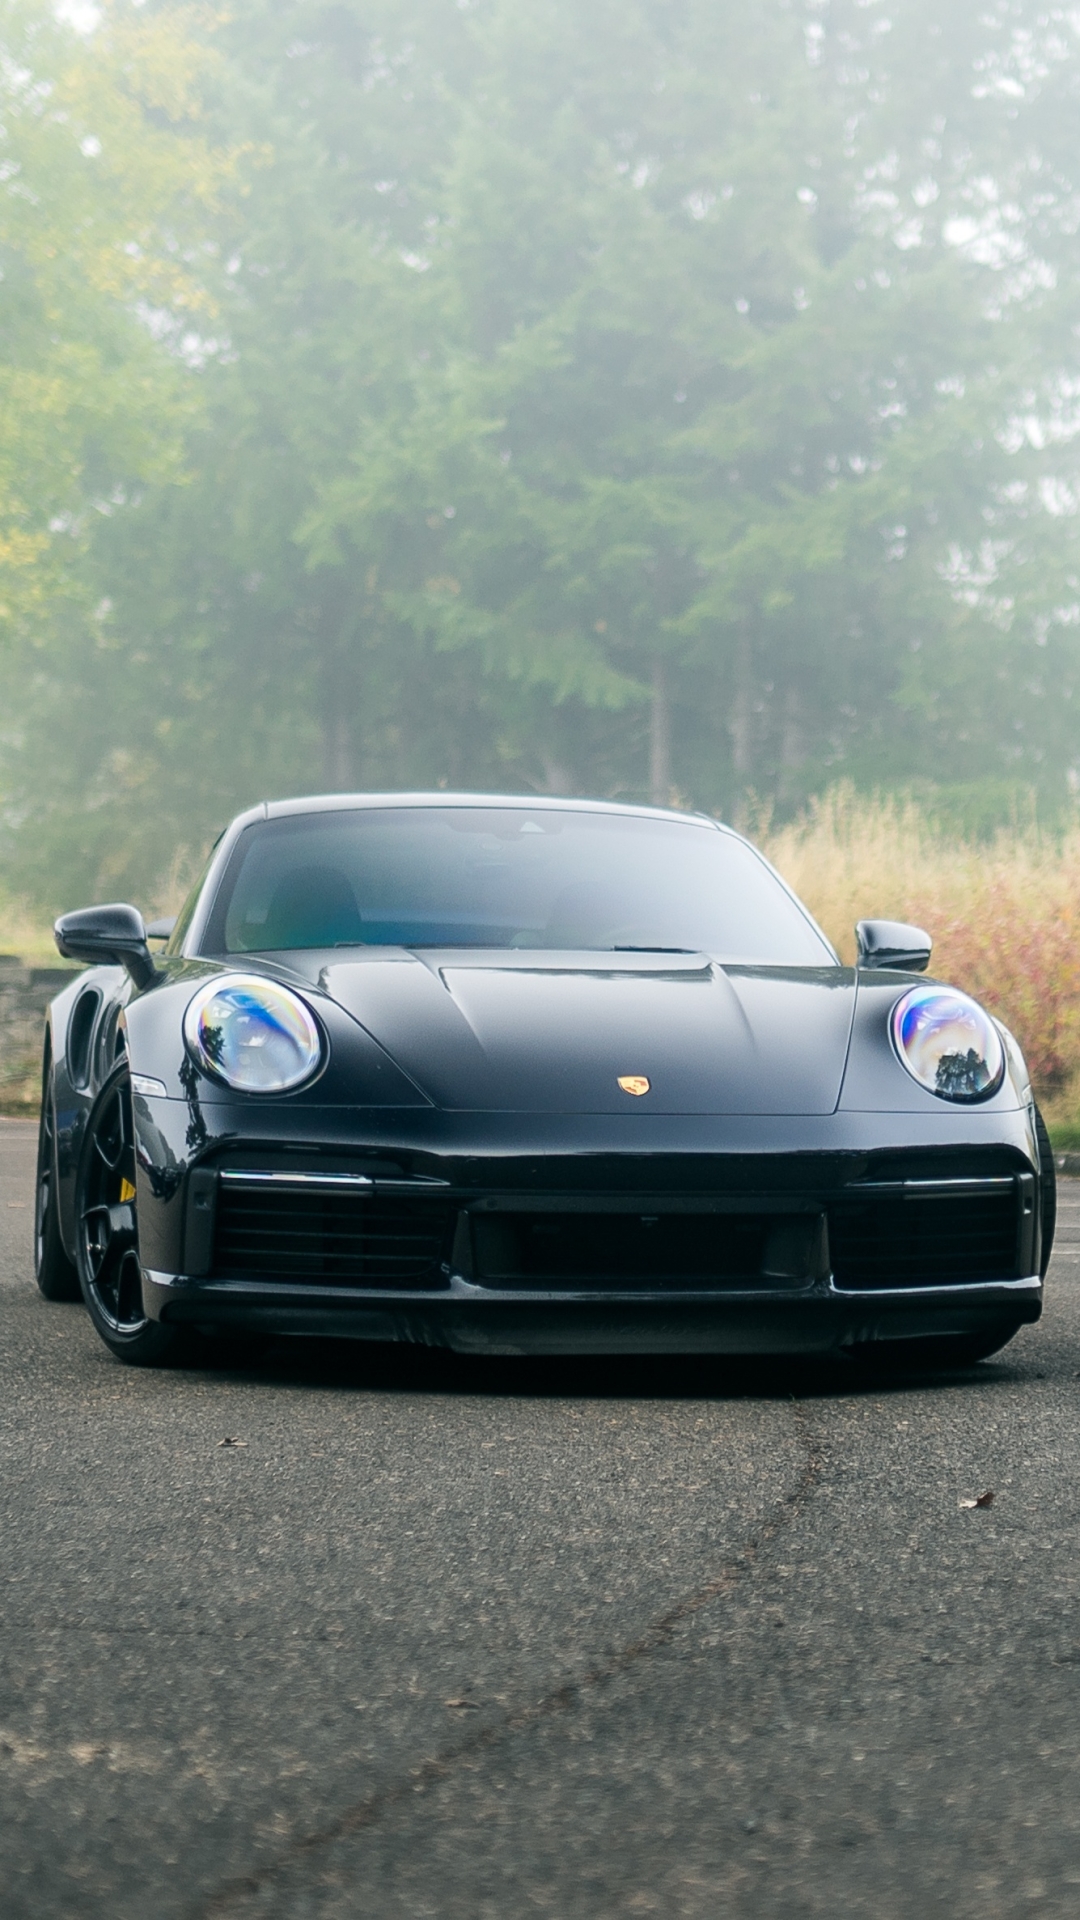 Descarga gratuita de fondo de pantalla para móvil de Porsche, Vehículos, Porsche 911 Turbo.